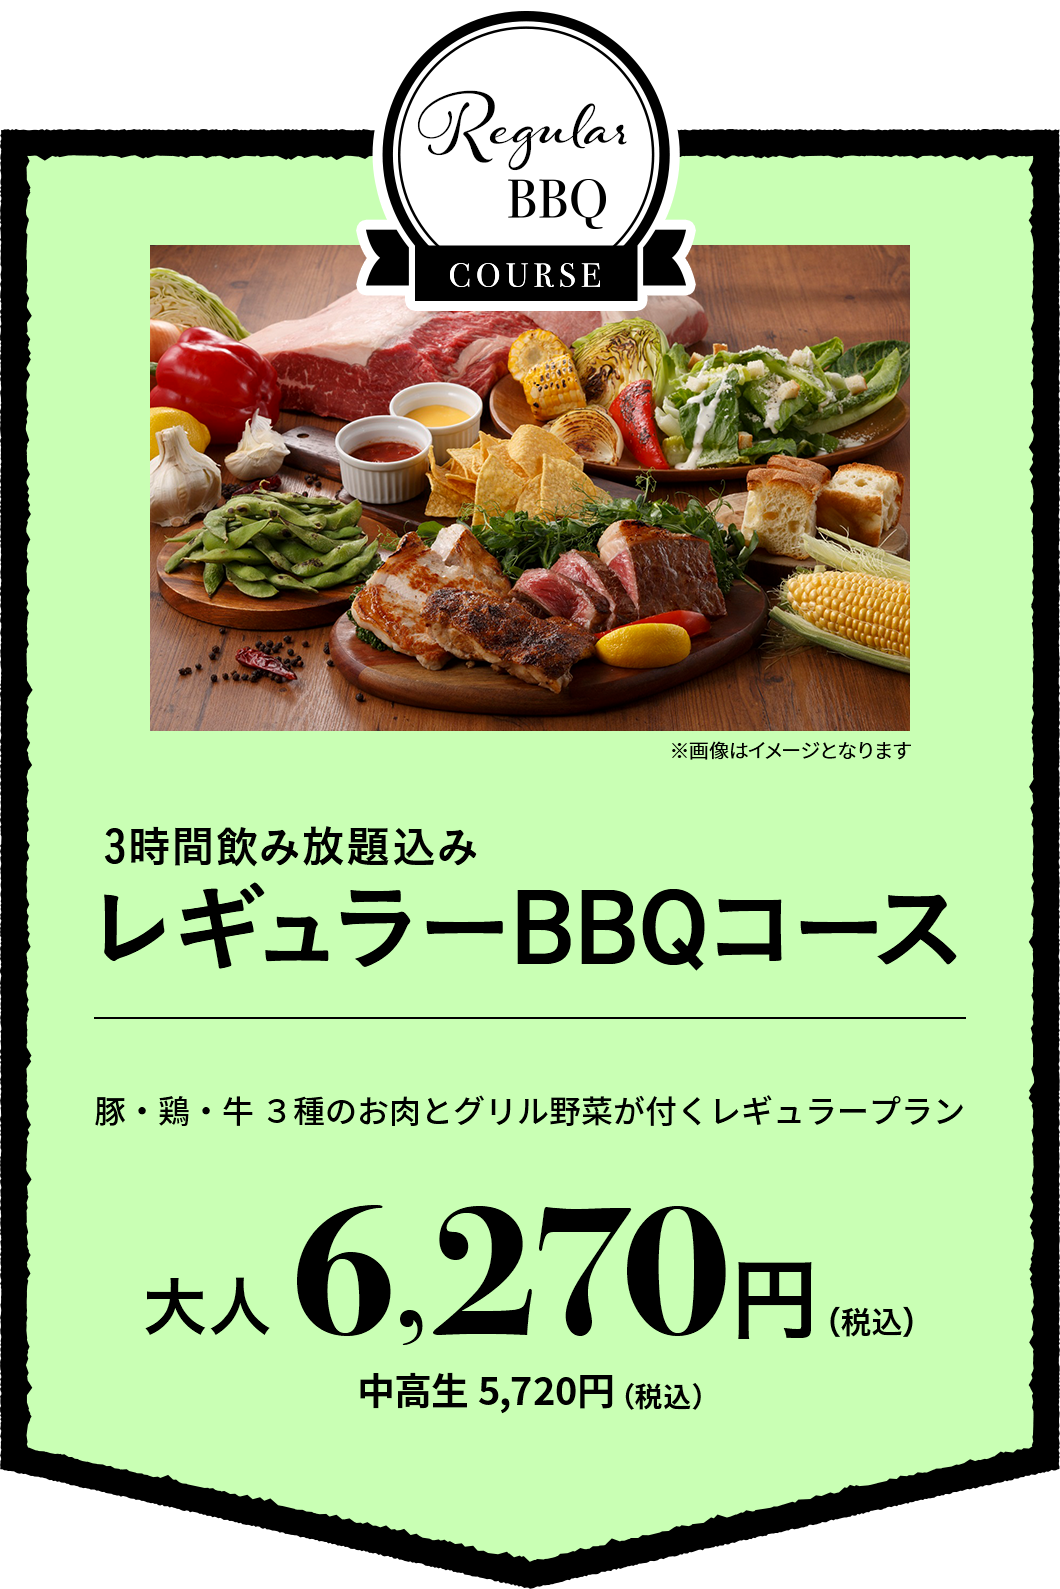 无限畅饮3小时的包含的常规BBQ套餐大人6,270日元(含税)中学生5,720日元(含税)